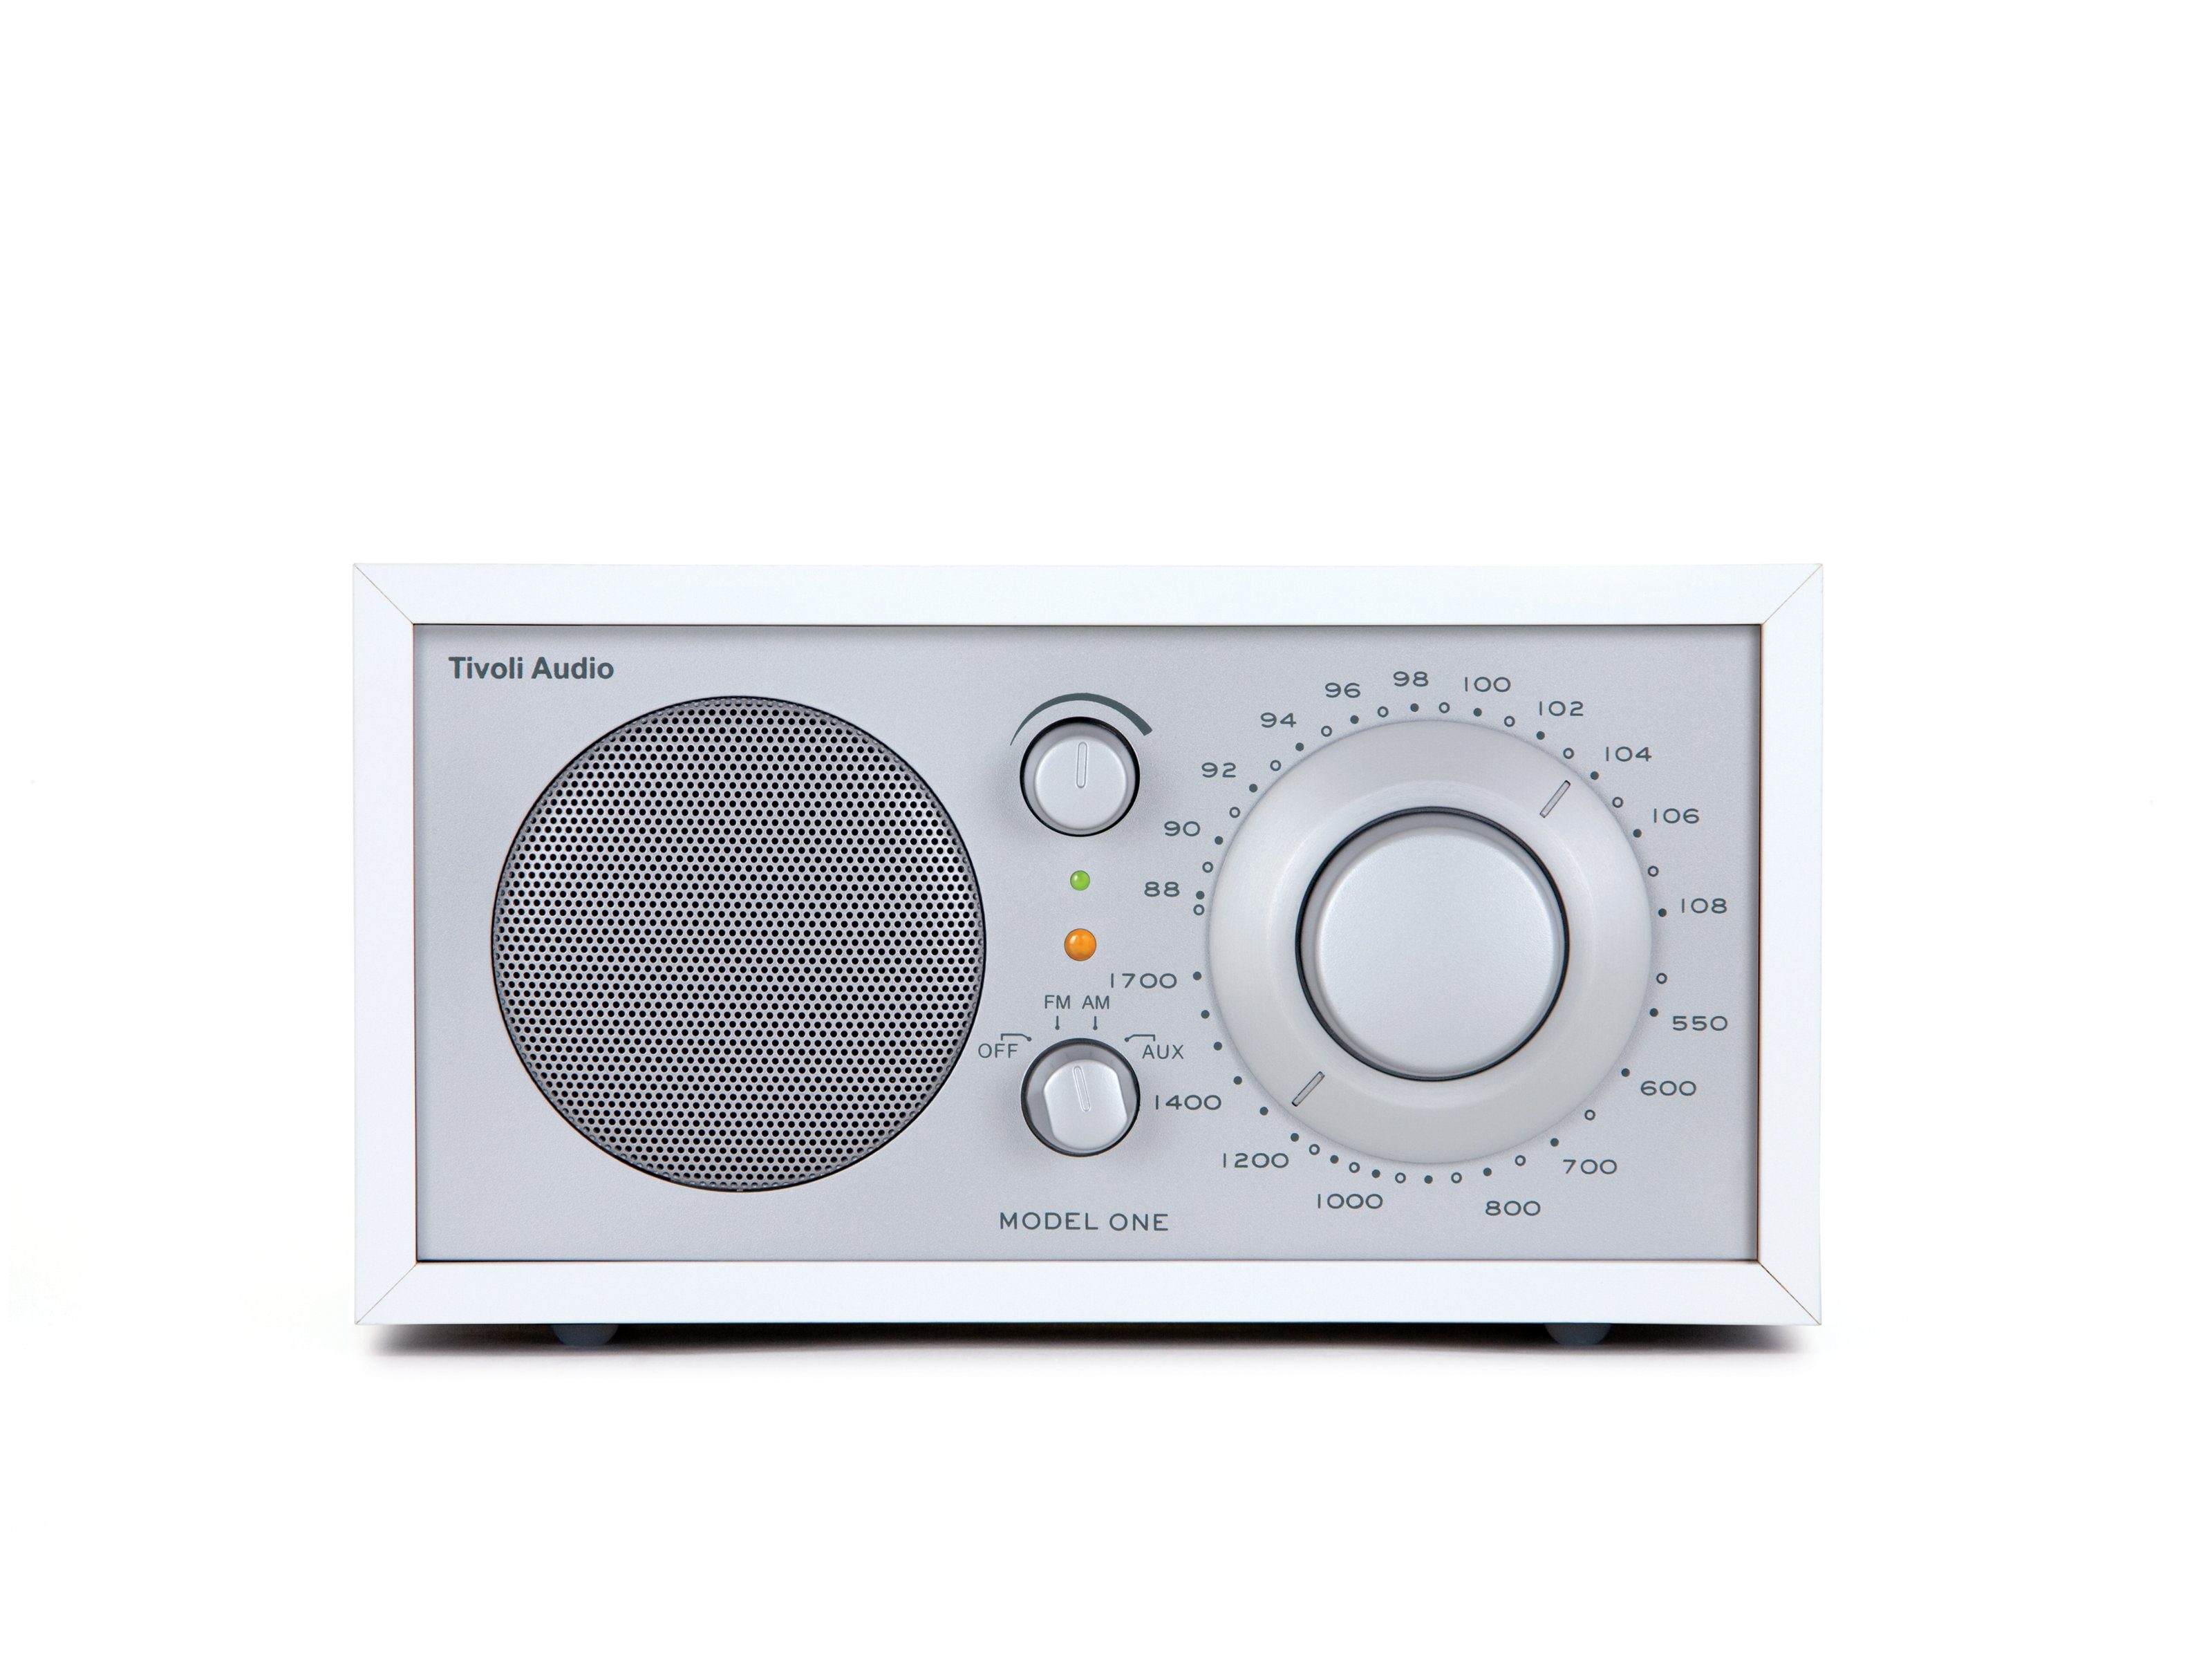 Tivoli Audio Model One Küchen-Radio (FM-Tuner, Küchen-Radio, Retro-Optik, Echtholz-Gehäuse) Weiss/Silber